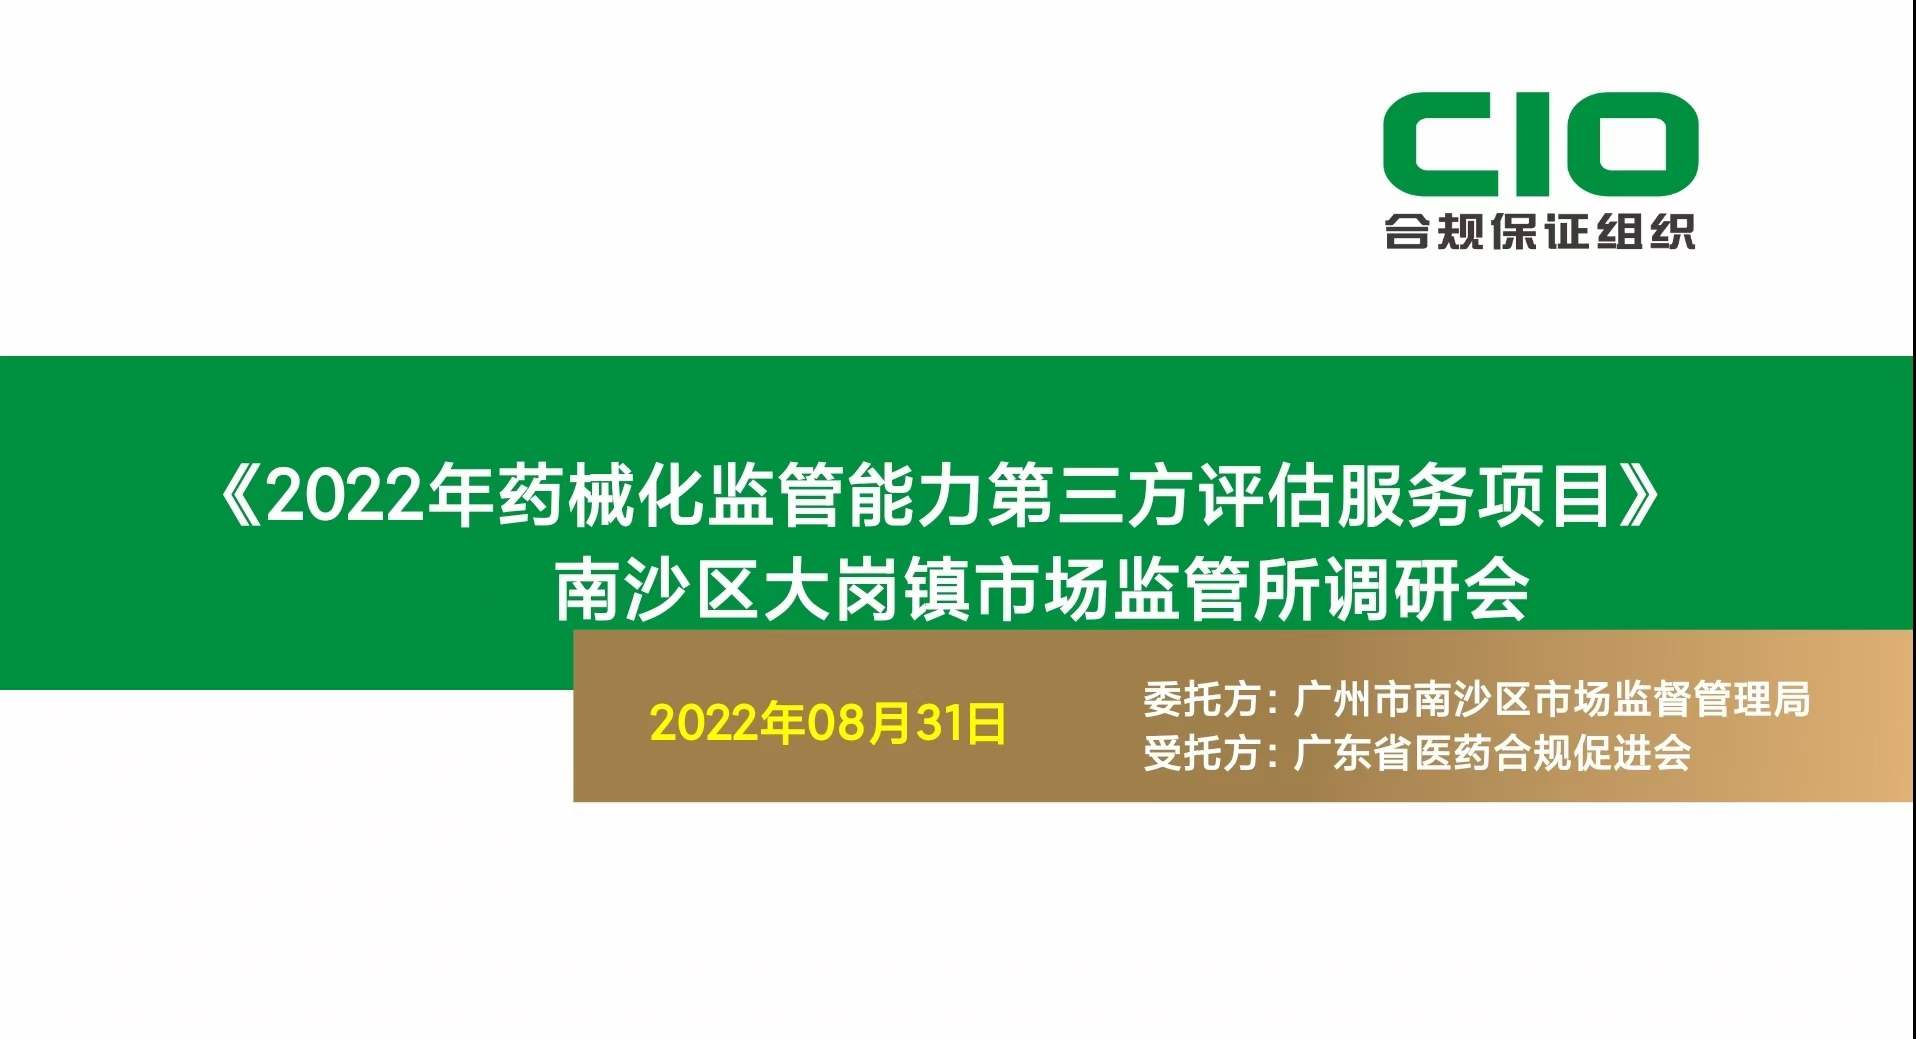 《广州市南沙区2022年药械化监管能力第三方评估》顺利推进中！